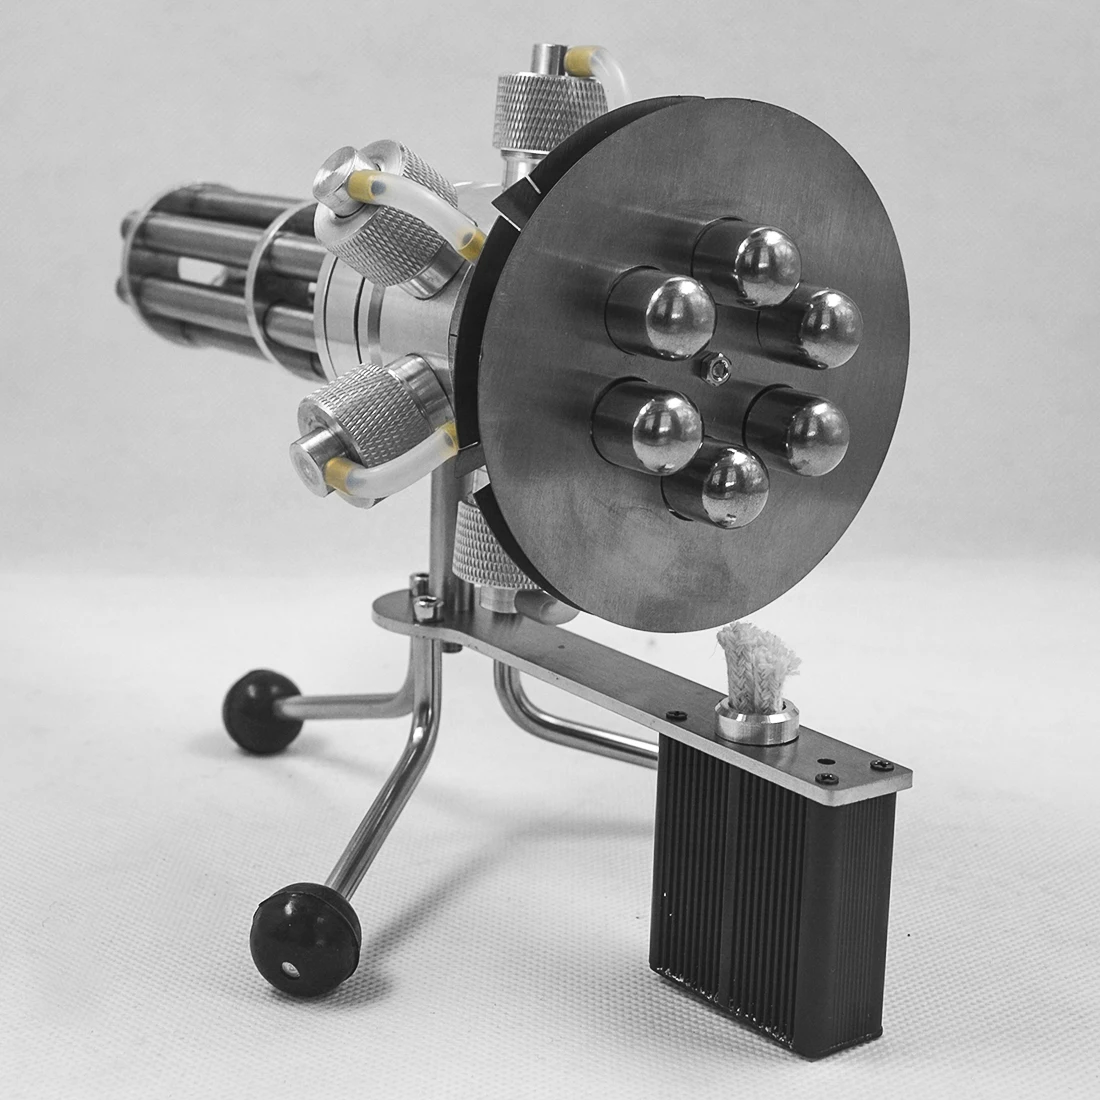 Горячая развивающие игрушки Шесть цилиндров металлический вращающийся Двигатель Стирлинга модель развивающая игрушка подарок для детей взрослых